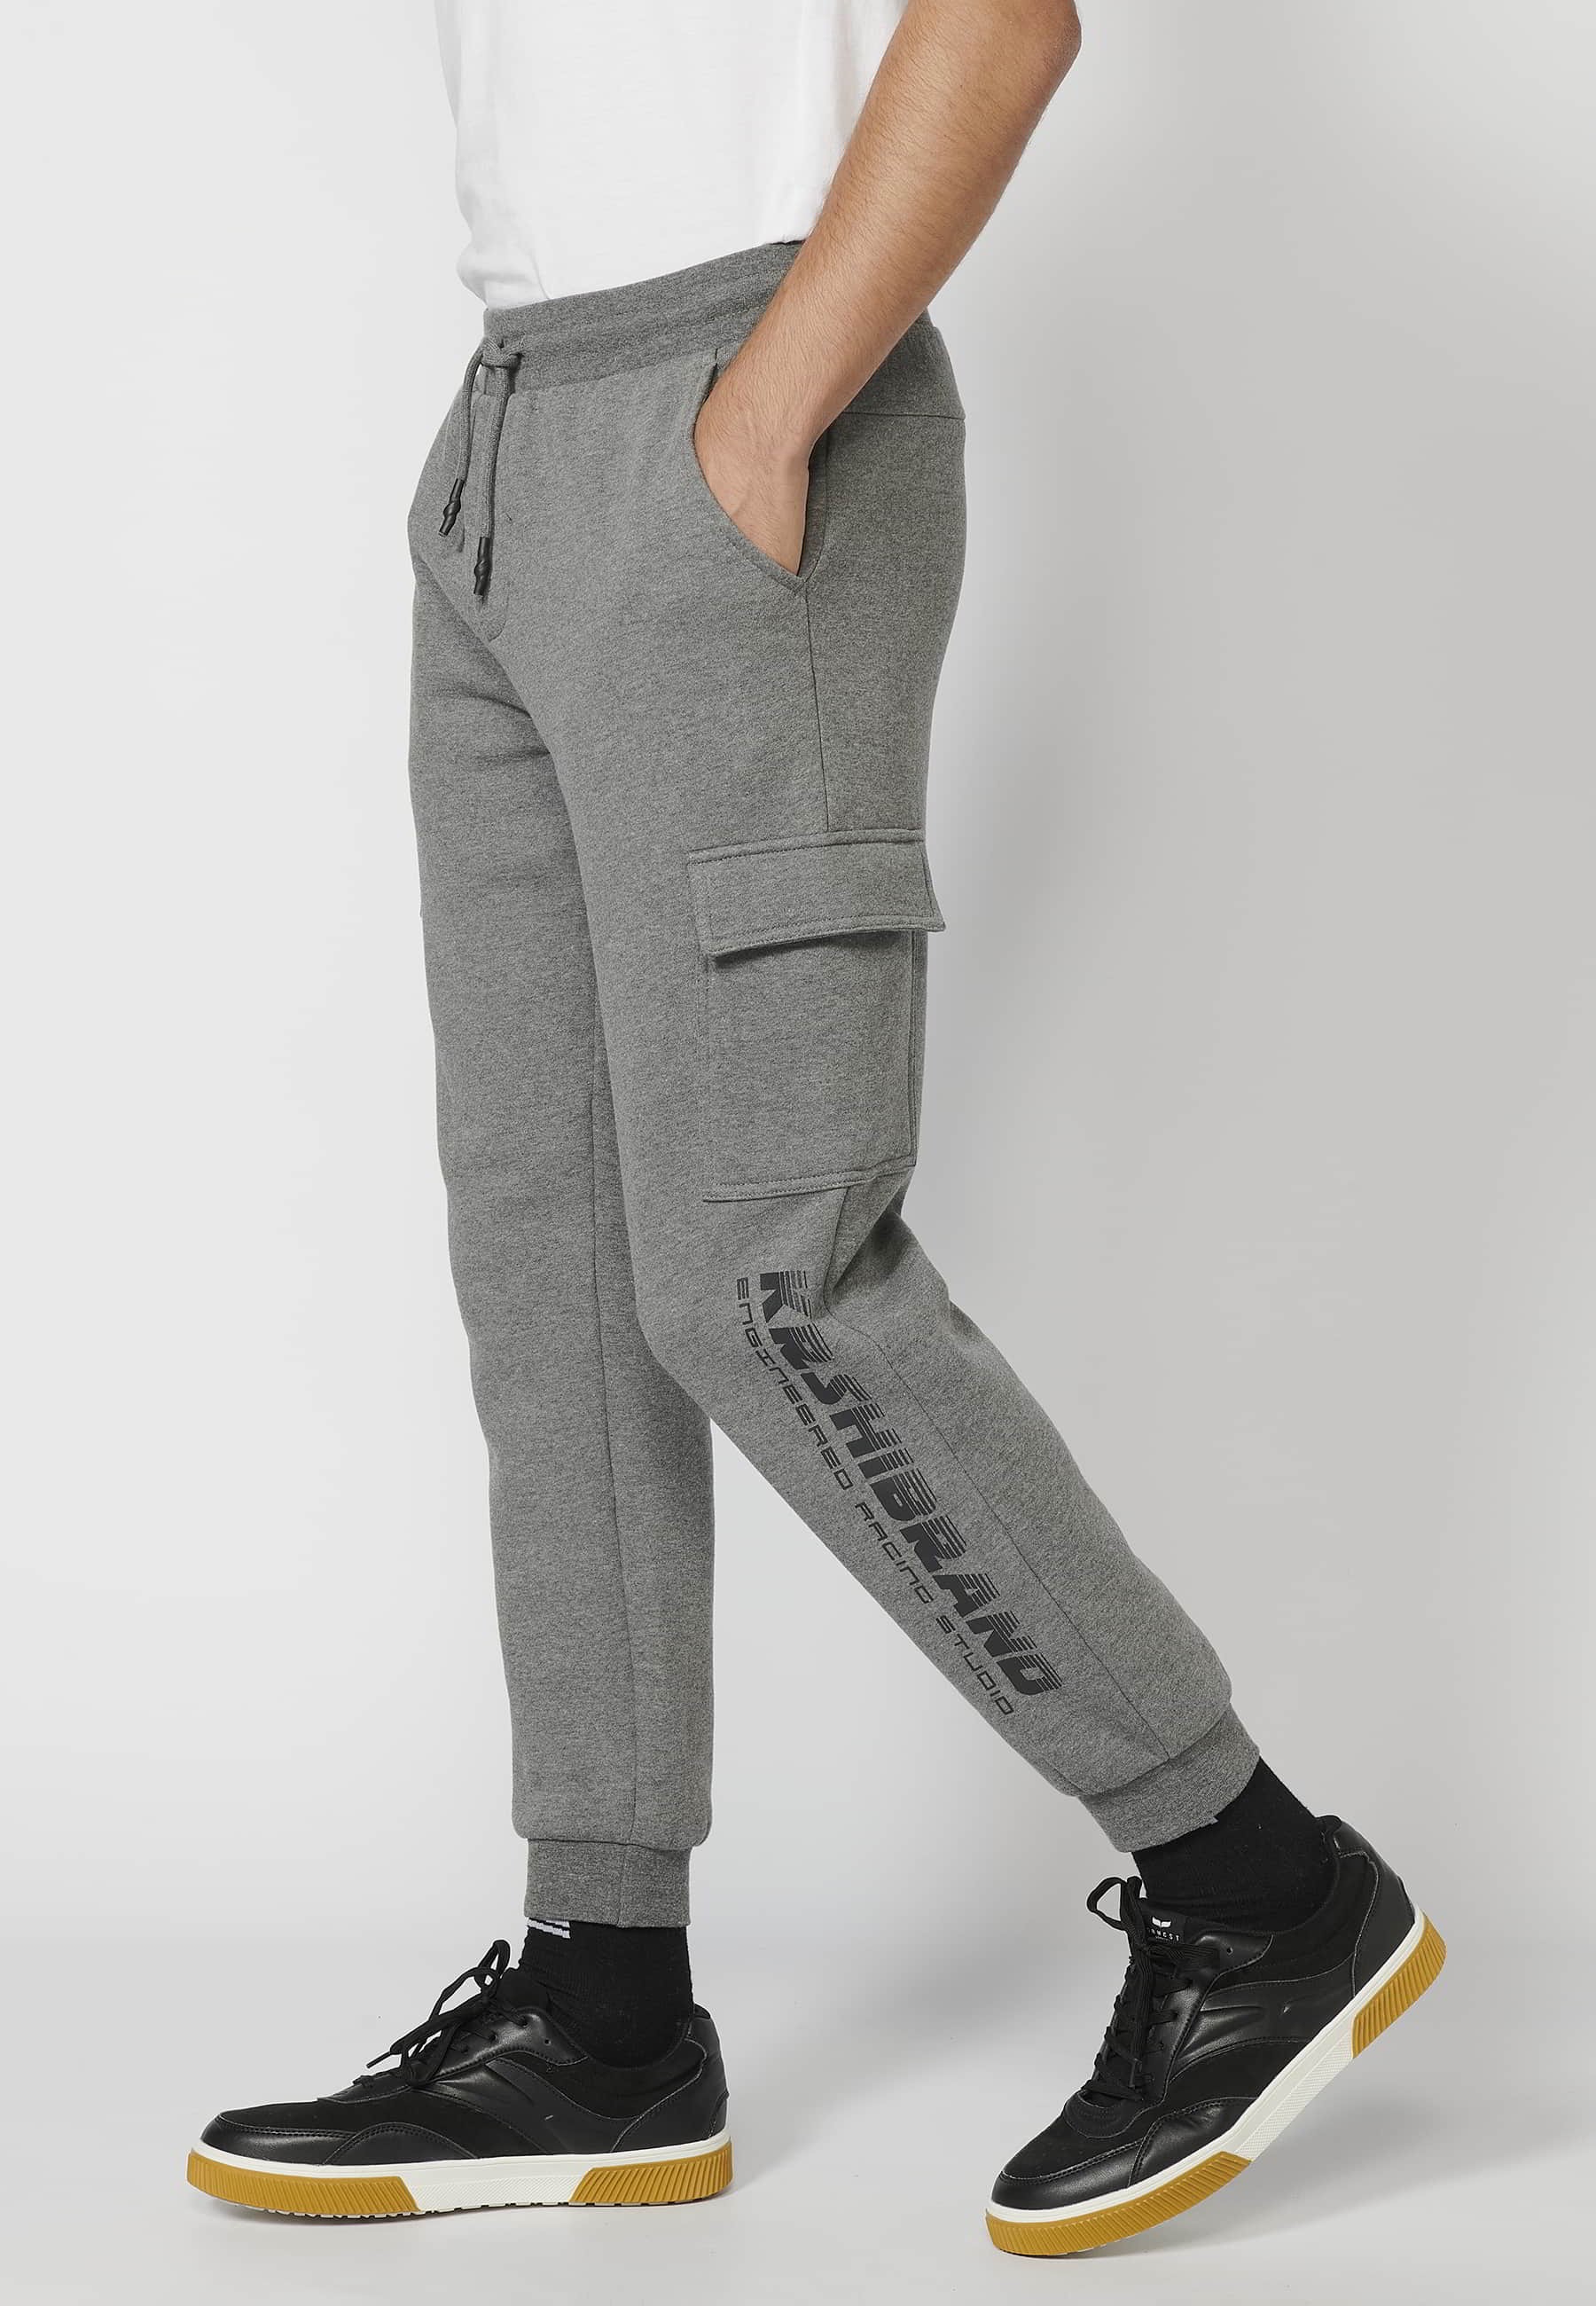 Pantalón Deportivo largo jogger con cintura elástica ajustable, bolsillo cargo, color Gris para Hombre